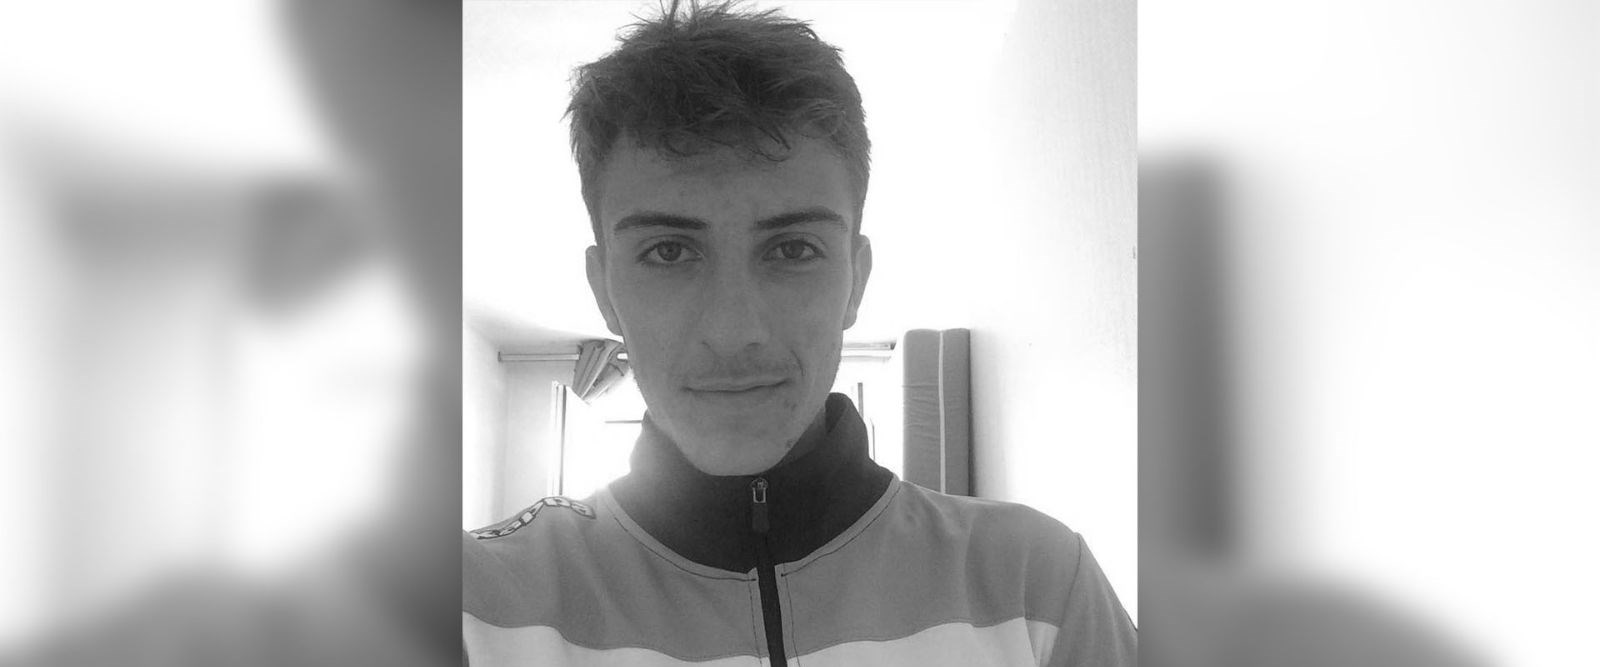 18 yaşındaki futbolcu yatağında ölü bulundu